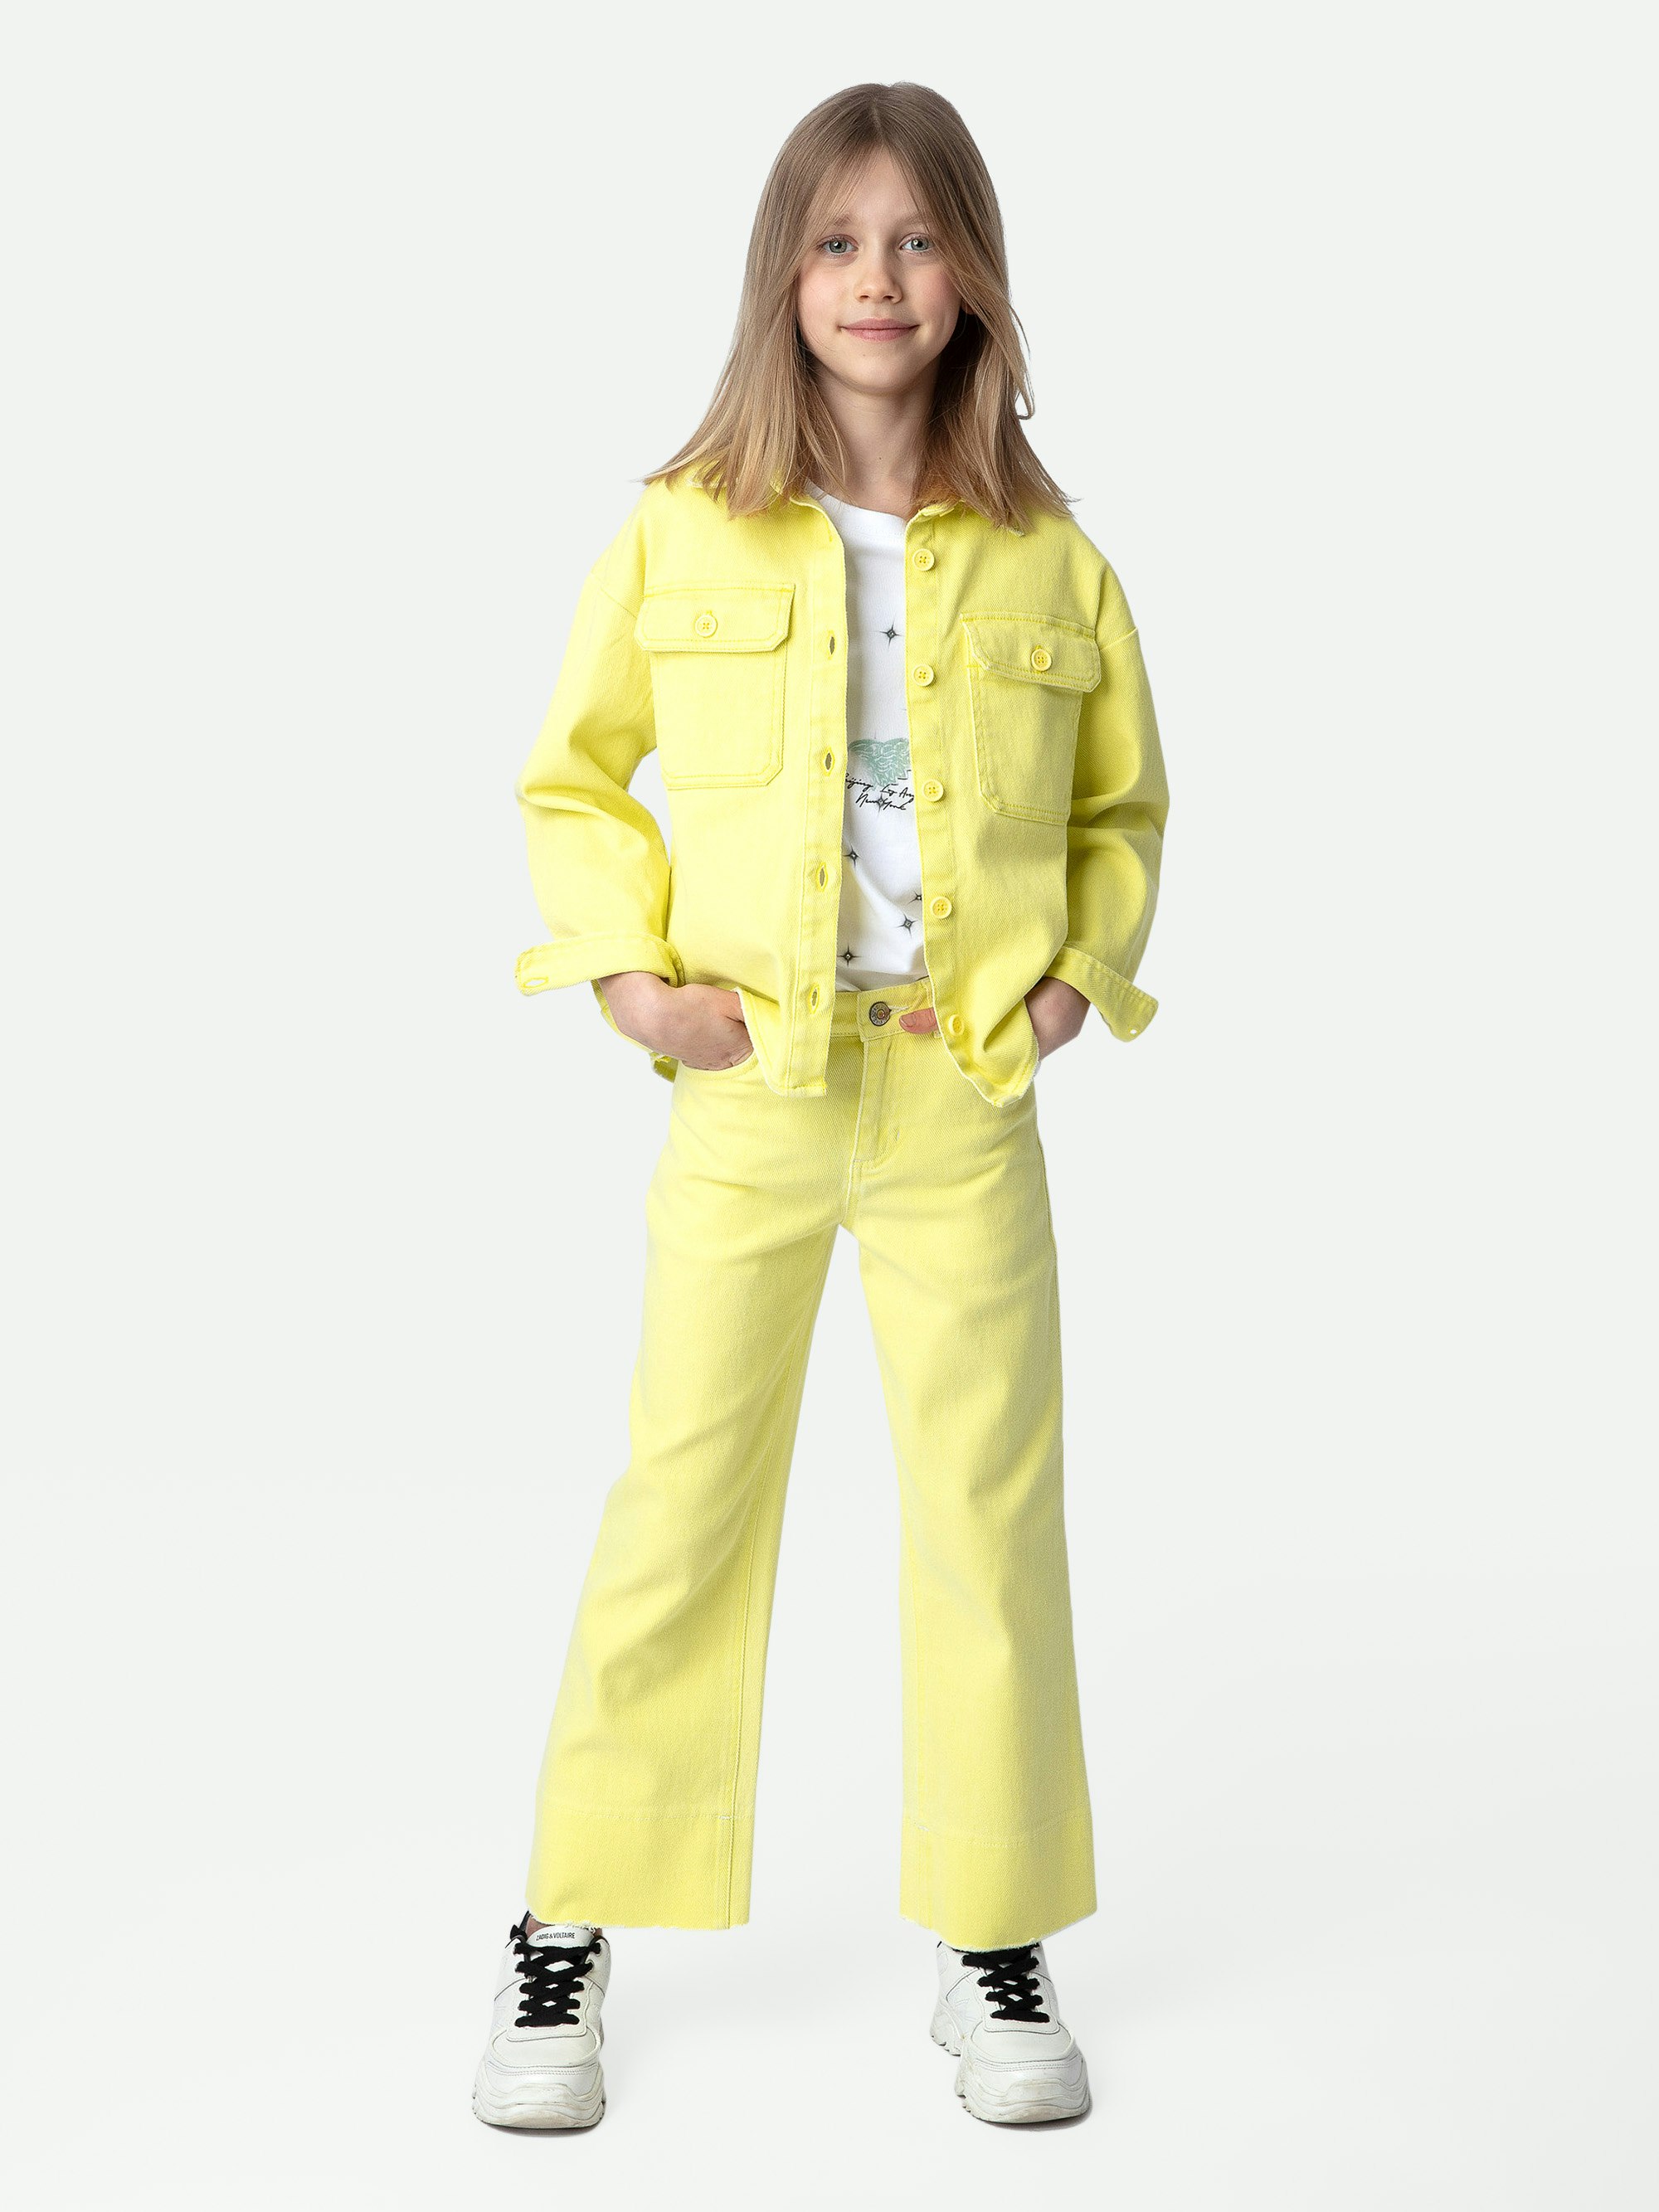 Chaqueta Timmy Niña - Chaqueta de sarga de algodón en color amarillo con mensaje «Amour» en la espalda para niña.